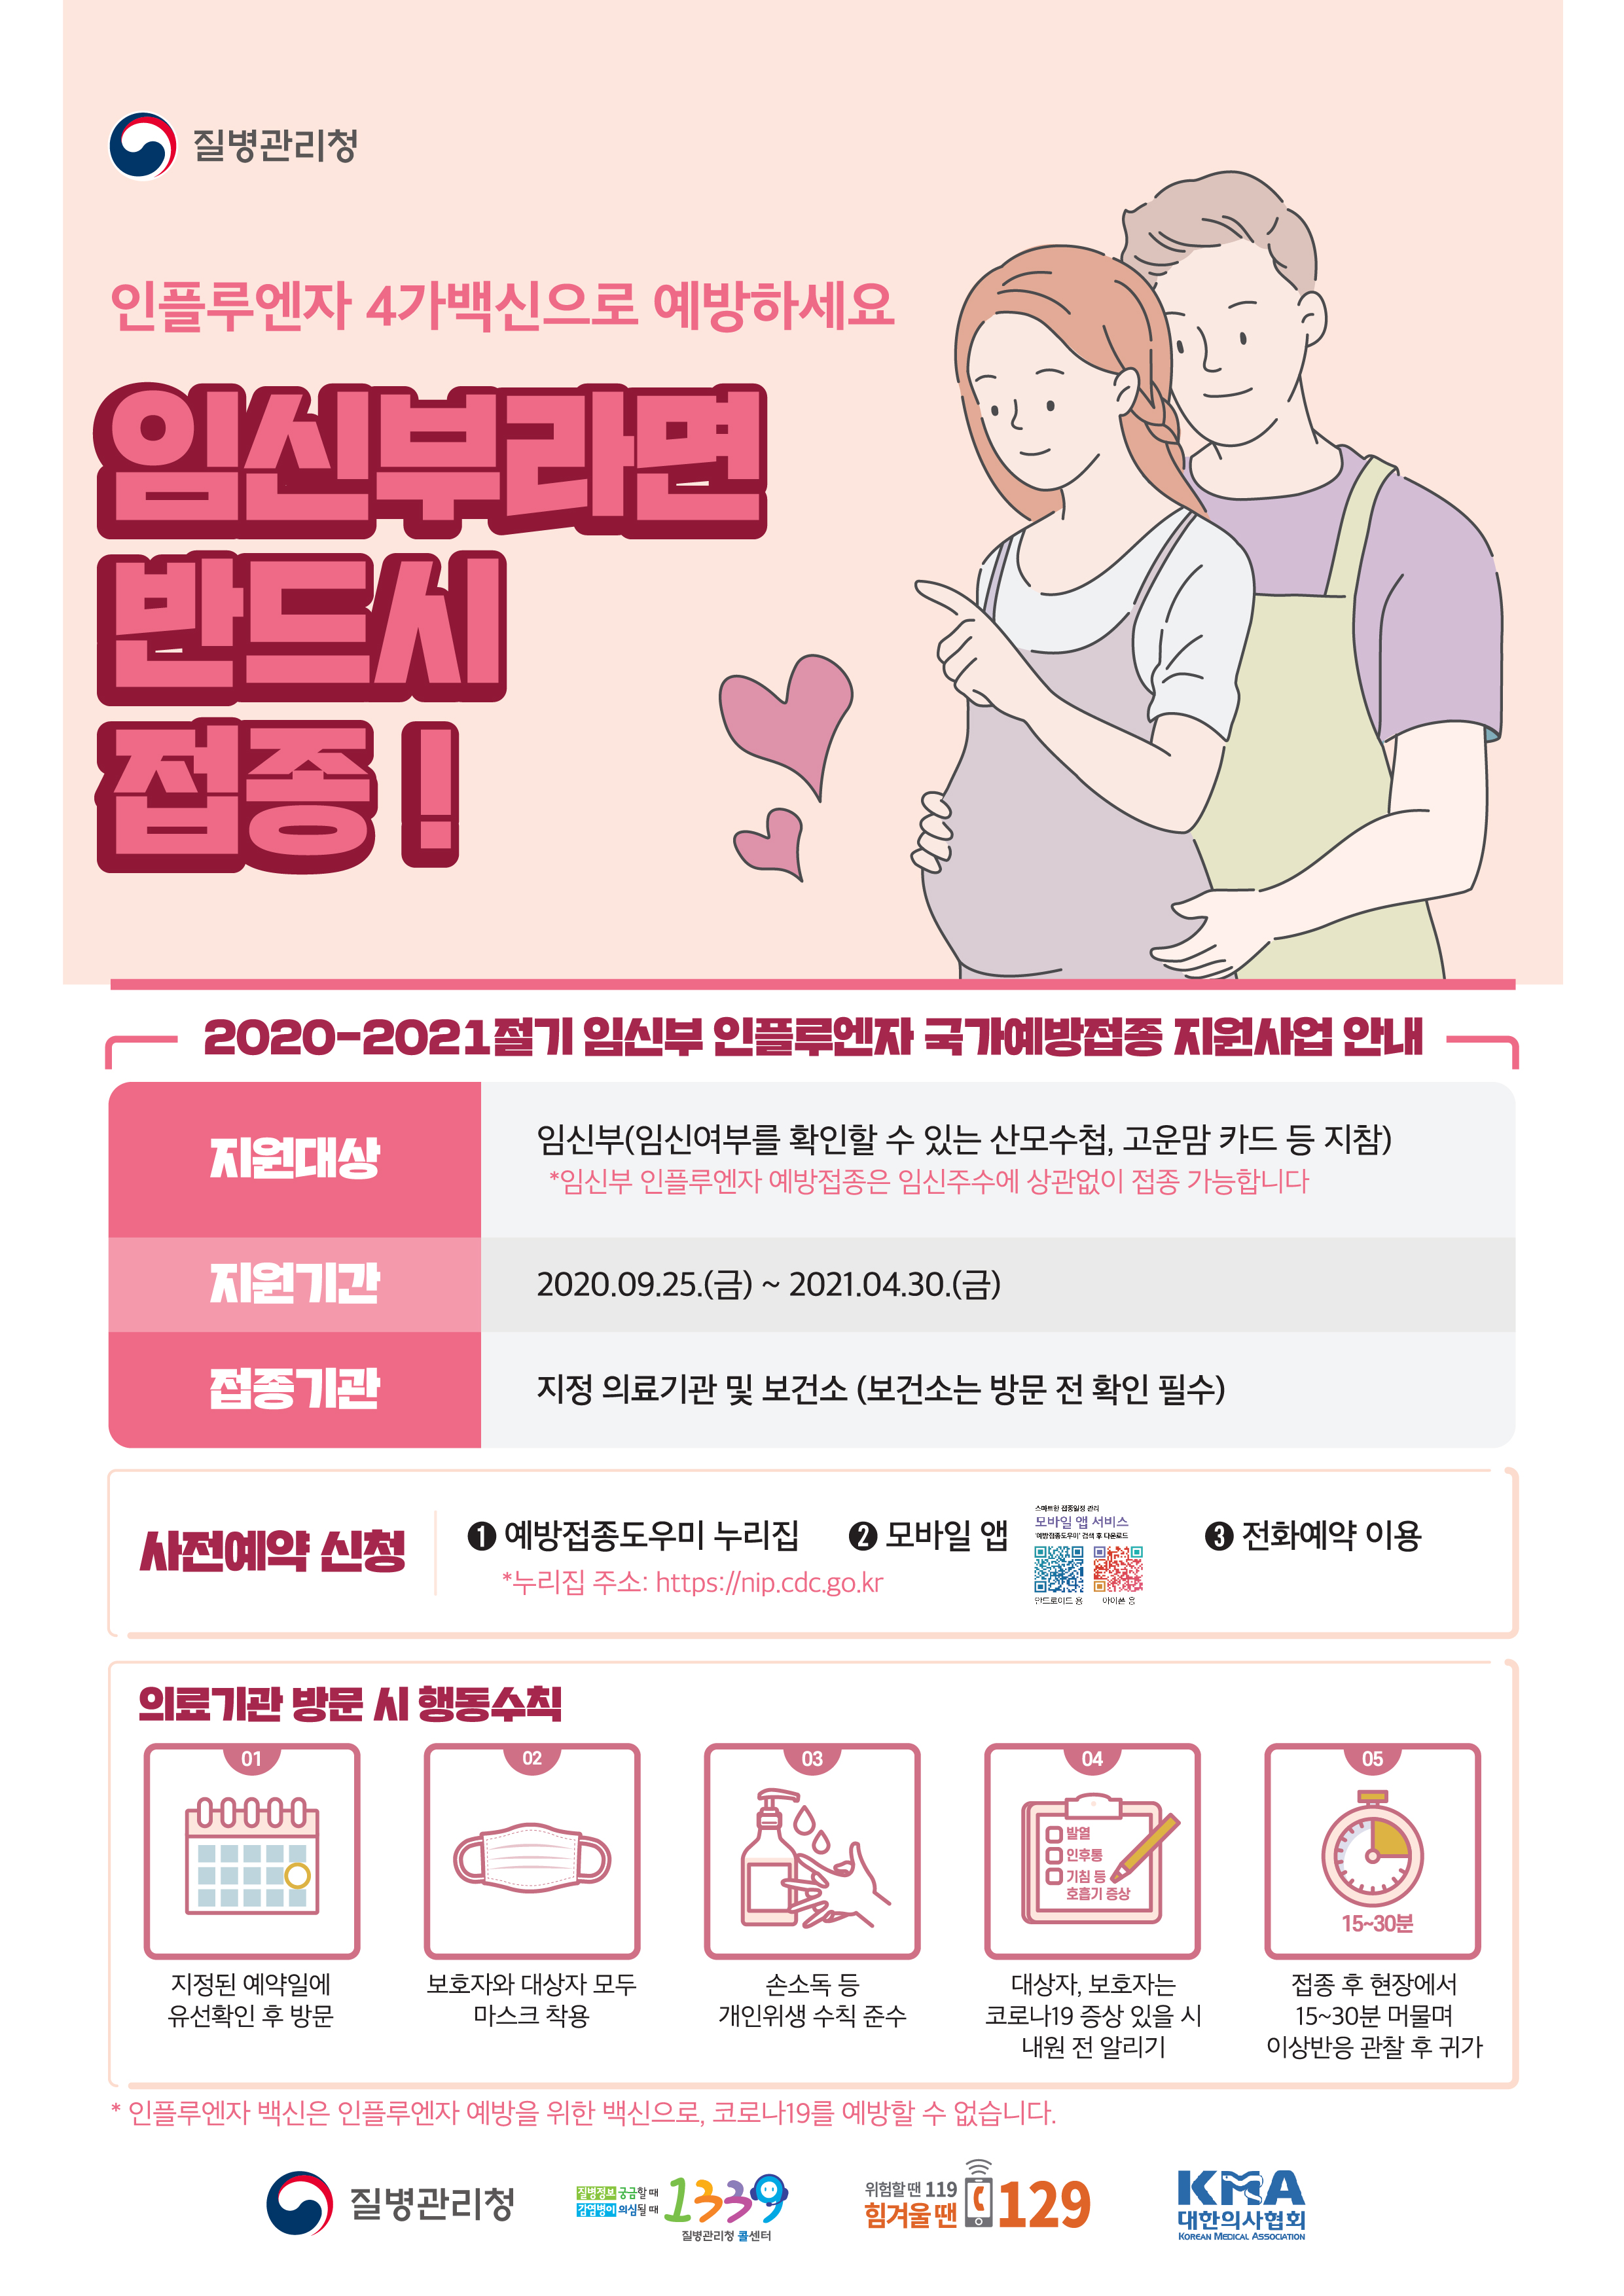 [예방접종] 2020-2021절기 임신부 인플루엔자 예방접종 포스터 